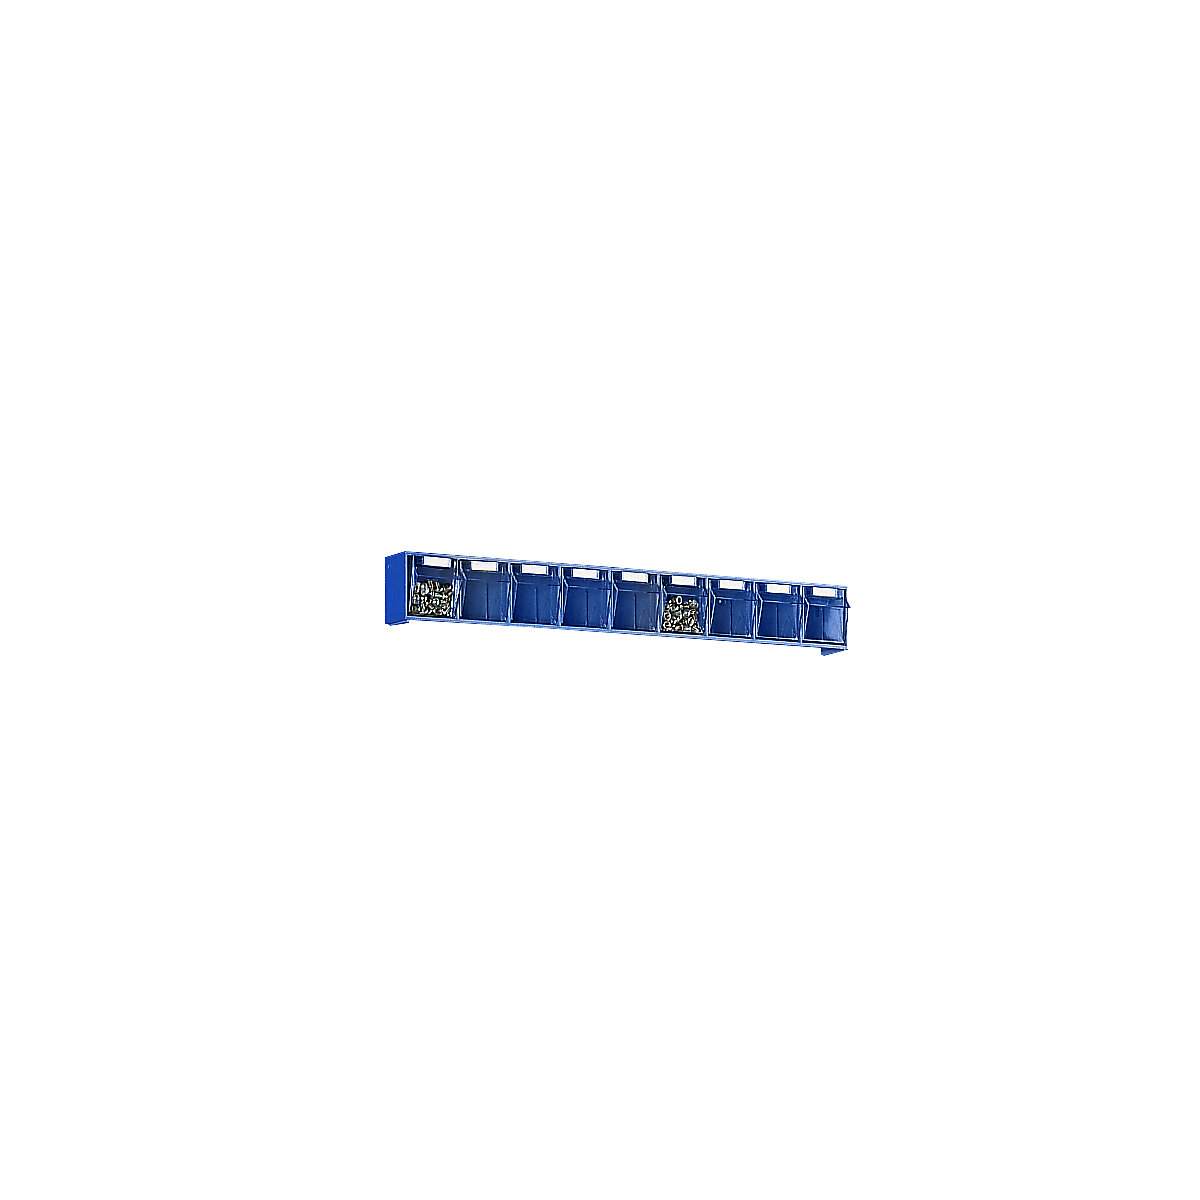 Sustav složivih kutija, VxŠxD kućišta 77 x 600 x 62 mm, 9 kutija, u plavoj boji, od 10 kom.-7